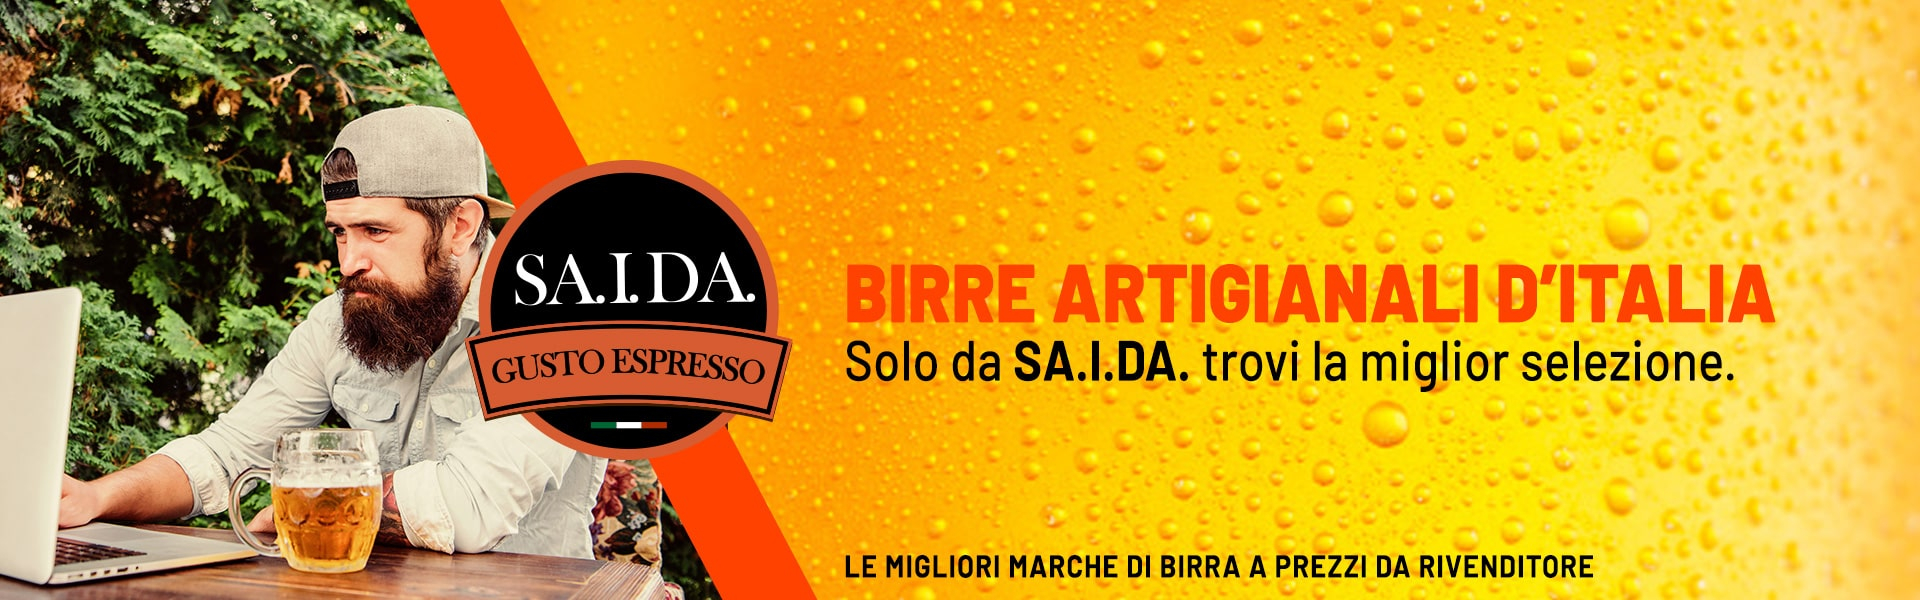 Birre artigianali italiane selezione SA.I.DA.